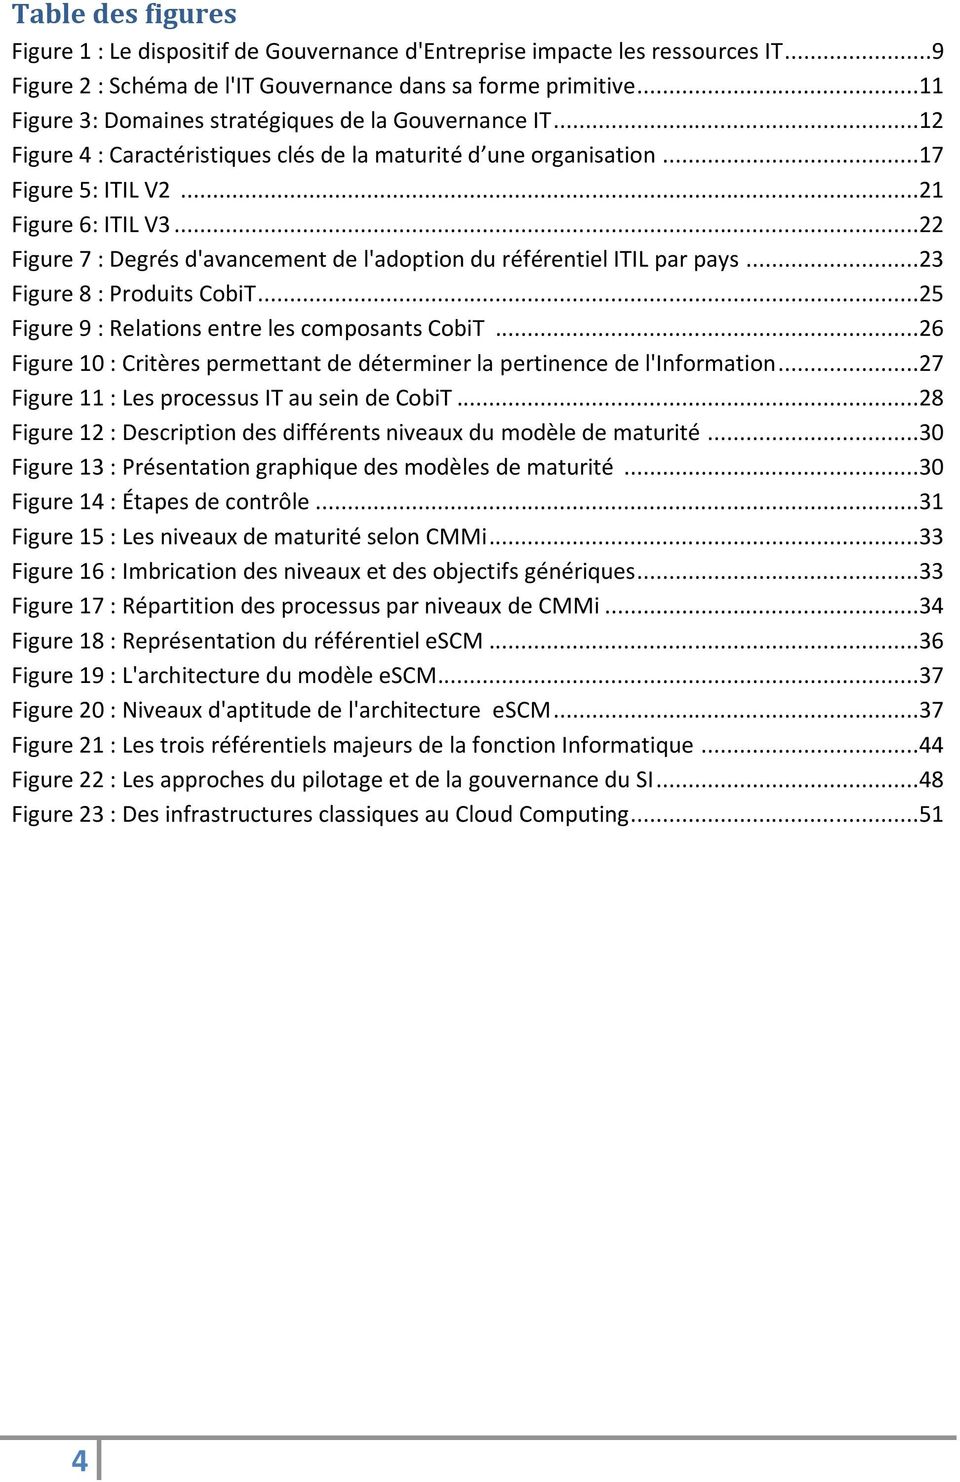 ..22 Figure 7 : Degrés d'avancement de l'adoption du référentiel ITIL par pays...23 Figure 8 : Produits CobiT...25 Figure 9 : Relations entre les composants CobiT.